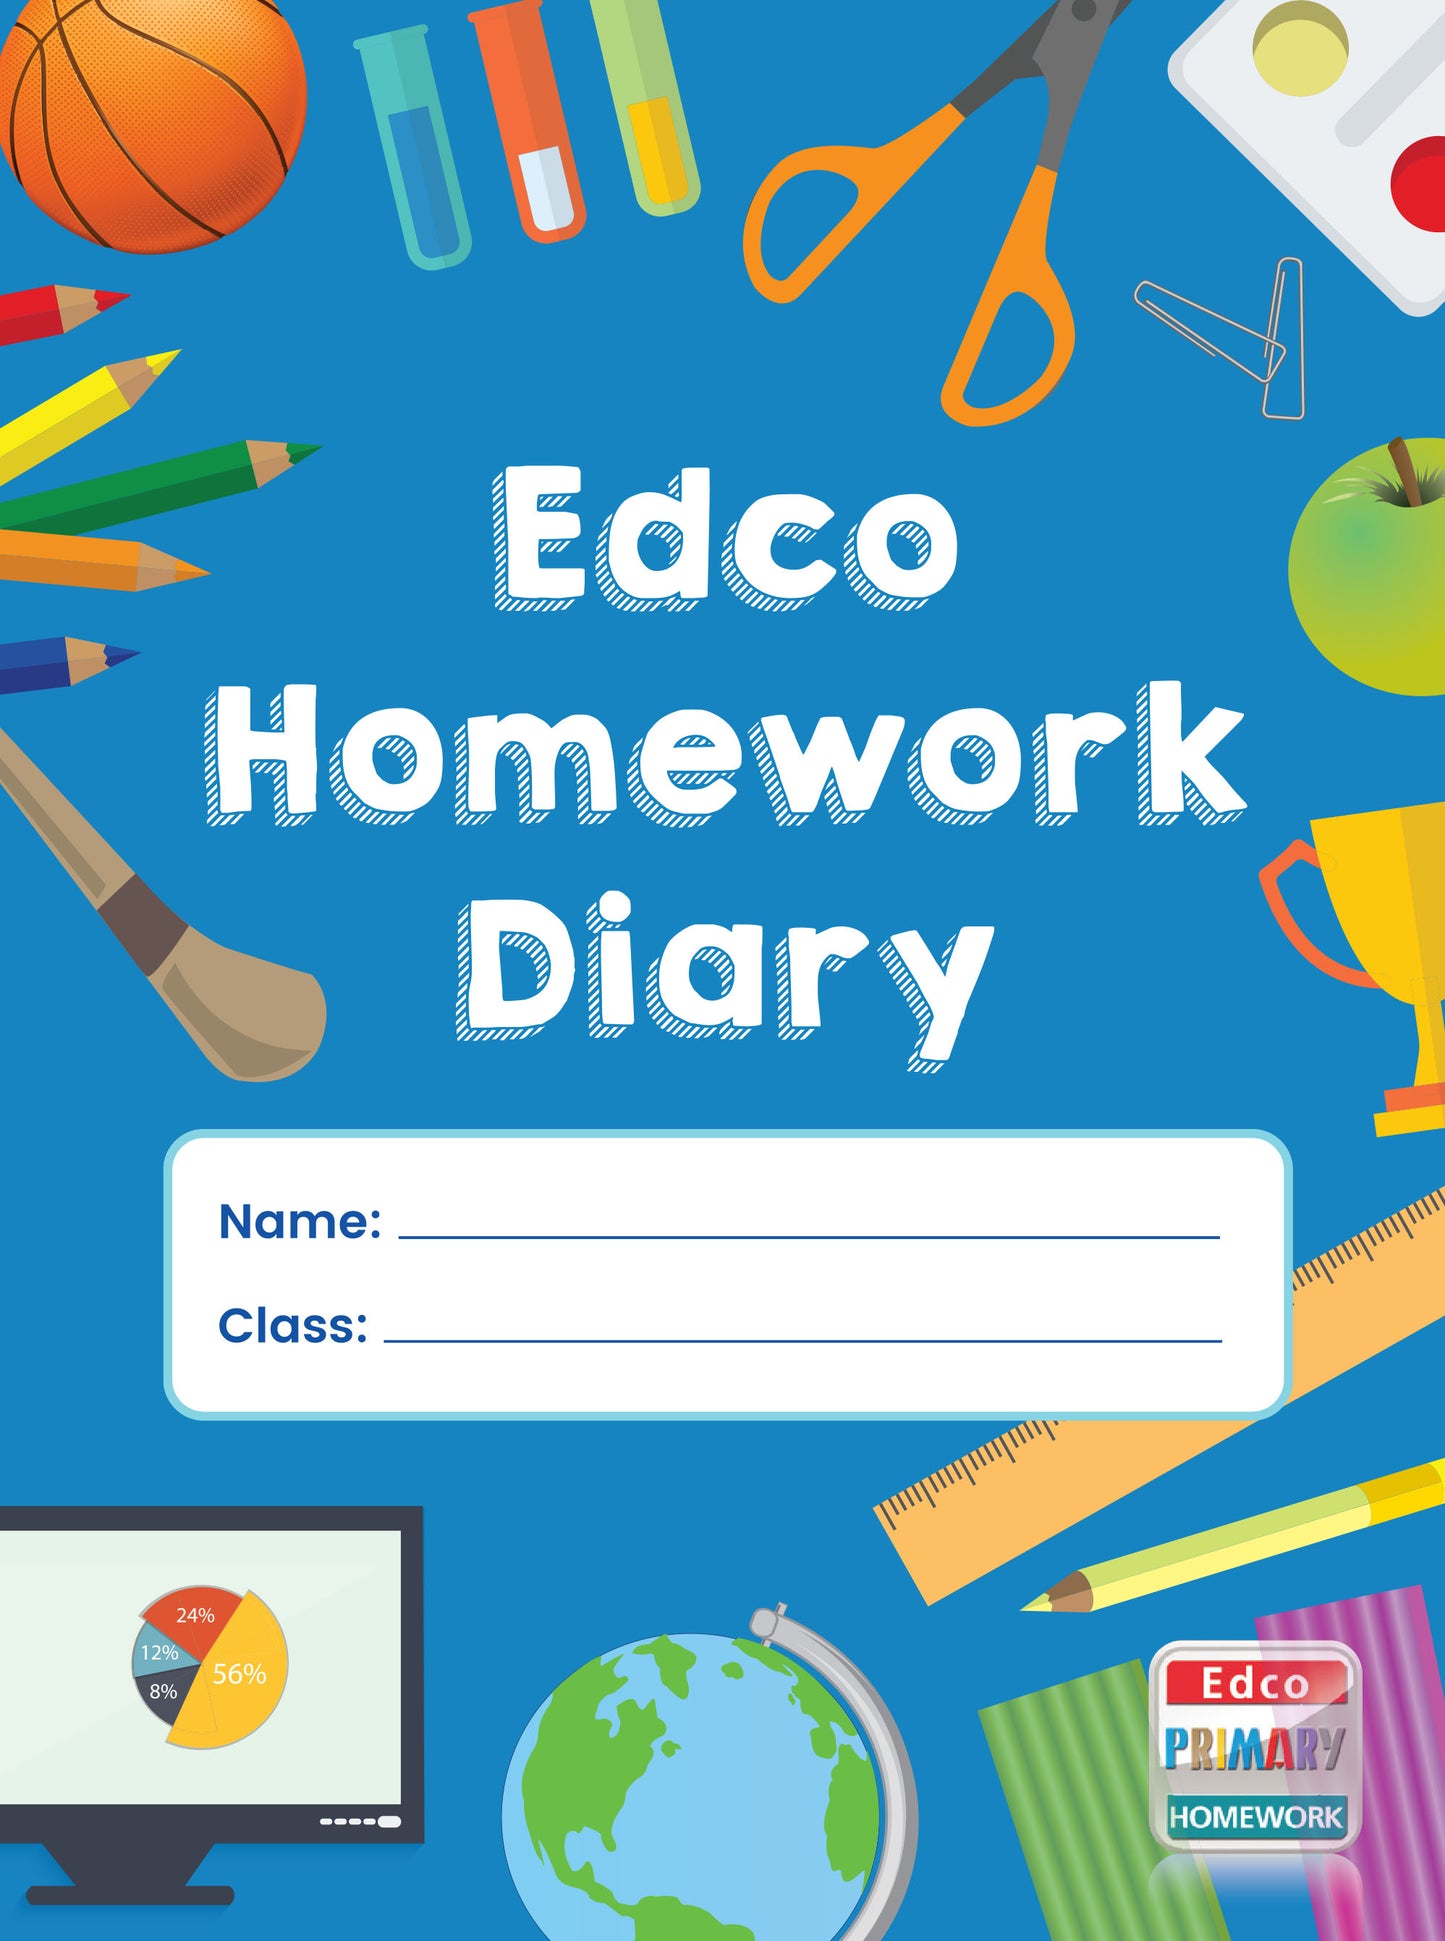 Homework Diary Edco